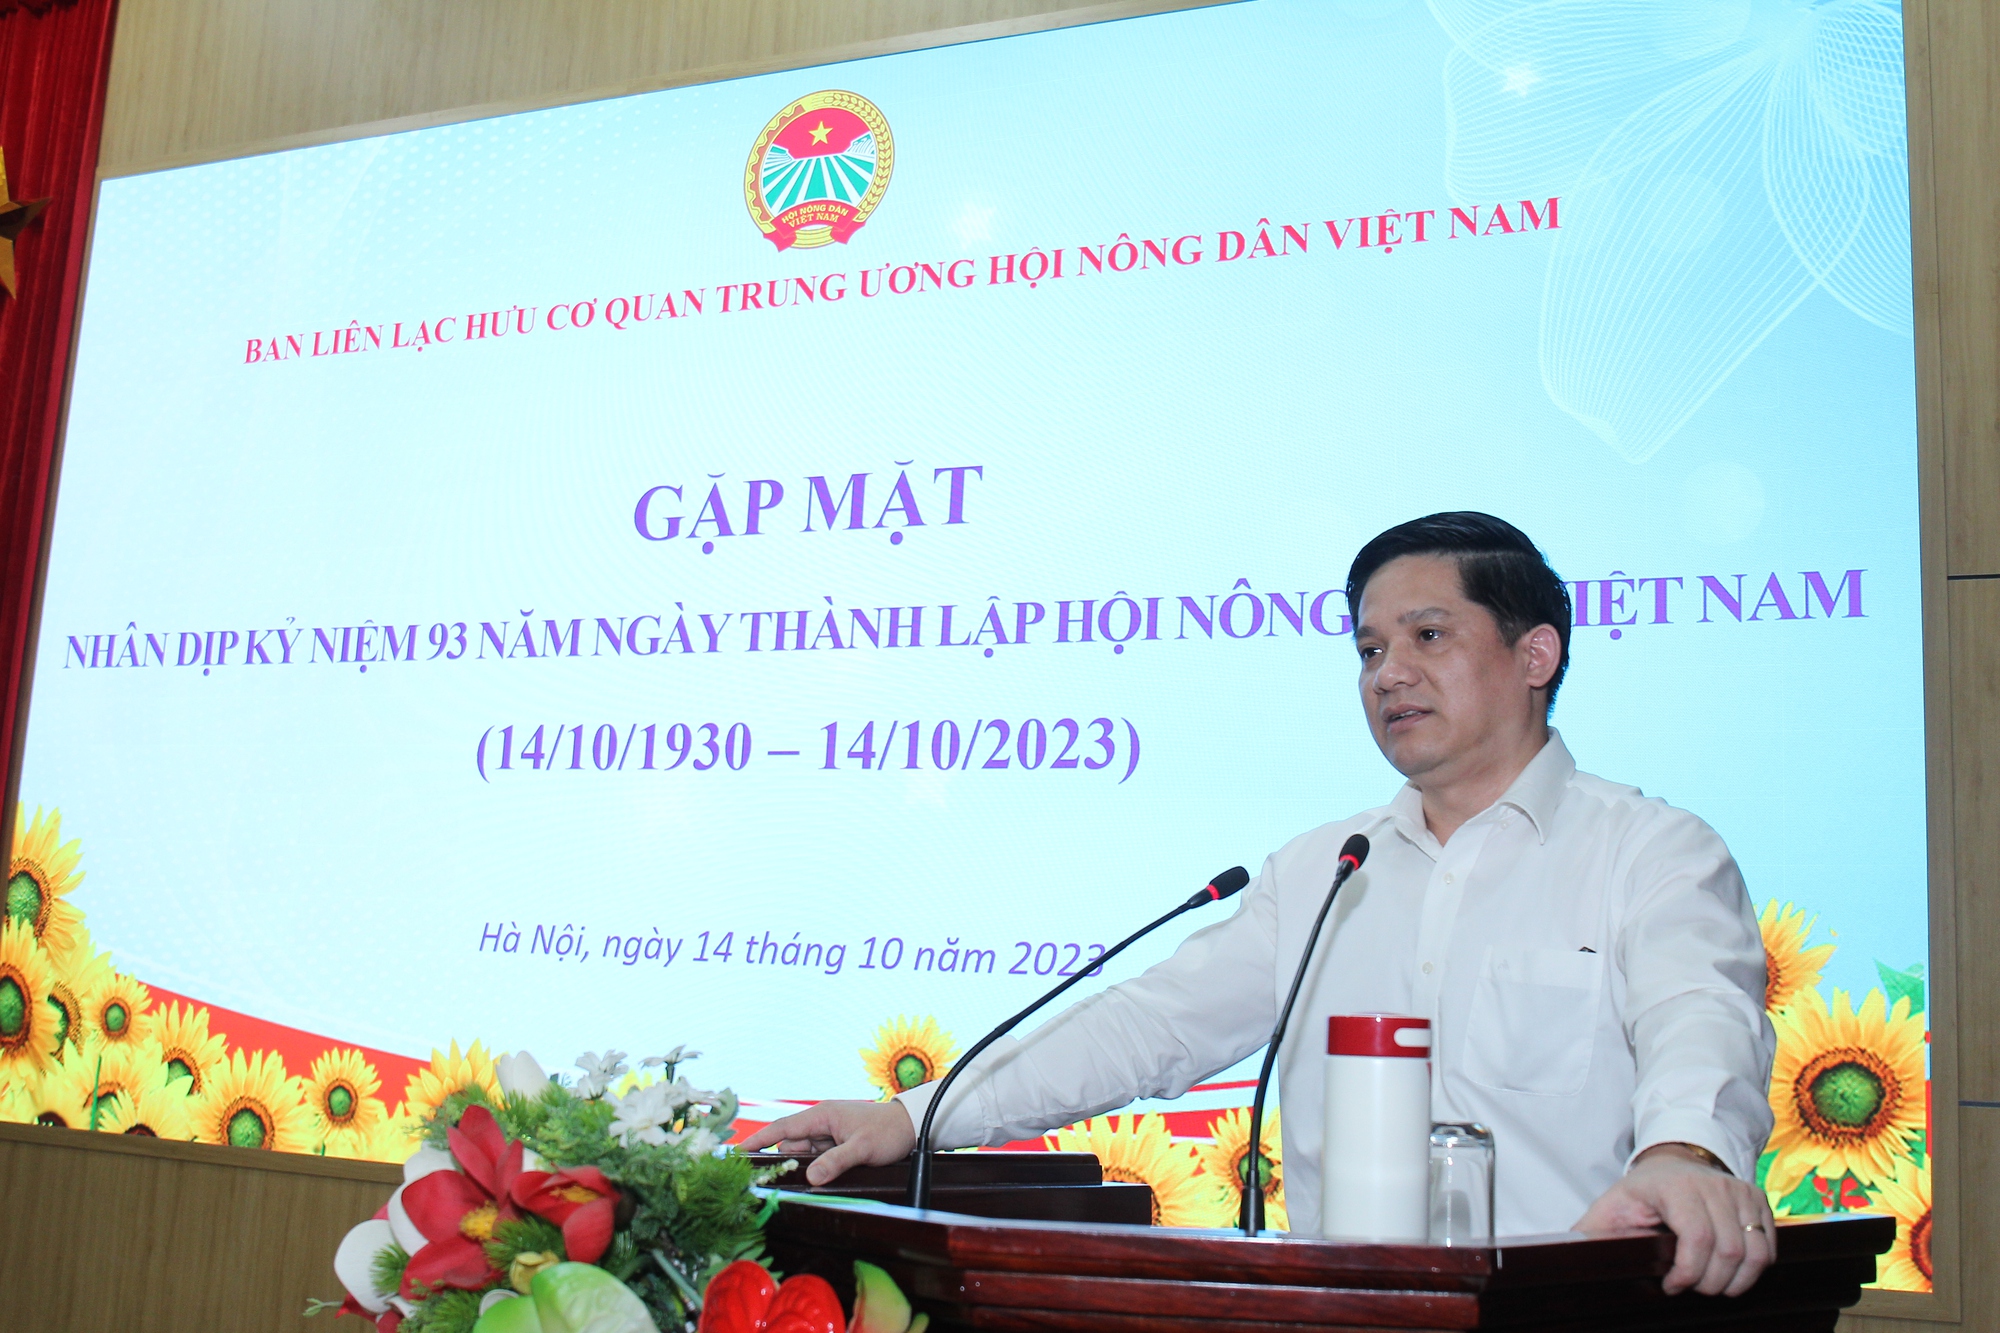 Trung ương Hội Nông dân Việt Nam gặp mặt cán bộ hưu trí nhân dịp kỷ niệm 93 năm ngày thành lập Hội NDVN - Ảnh 1.